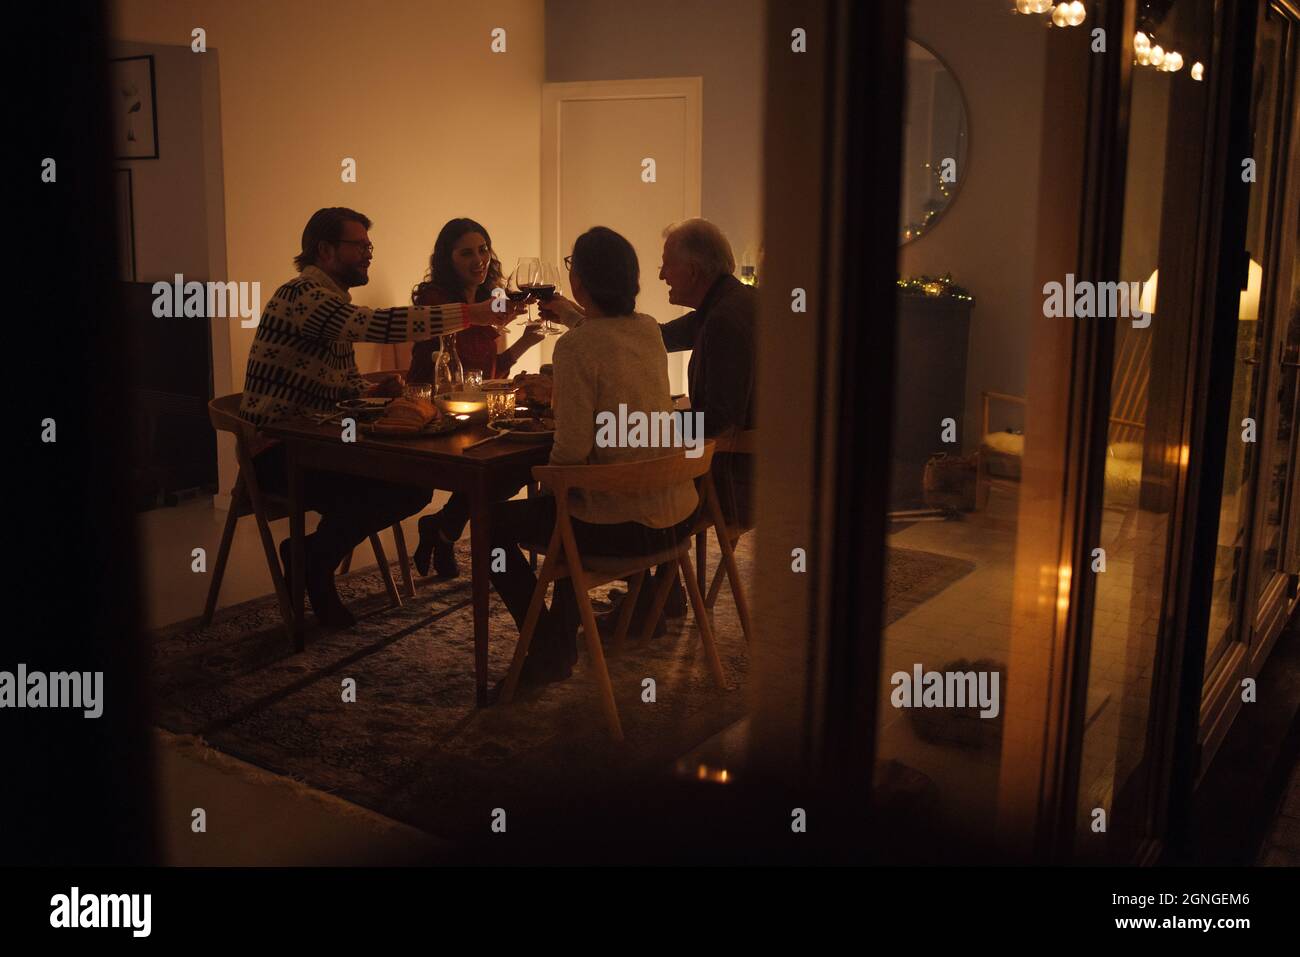 Familie, die am Heiligabend am Esstisch Wein toasting. Familie, die ein gemeinsames Weihnachtsessen in einem gemütlichen skandinavischen Zuhause hat. Stockfoto